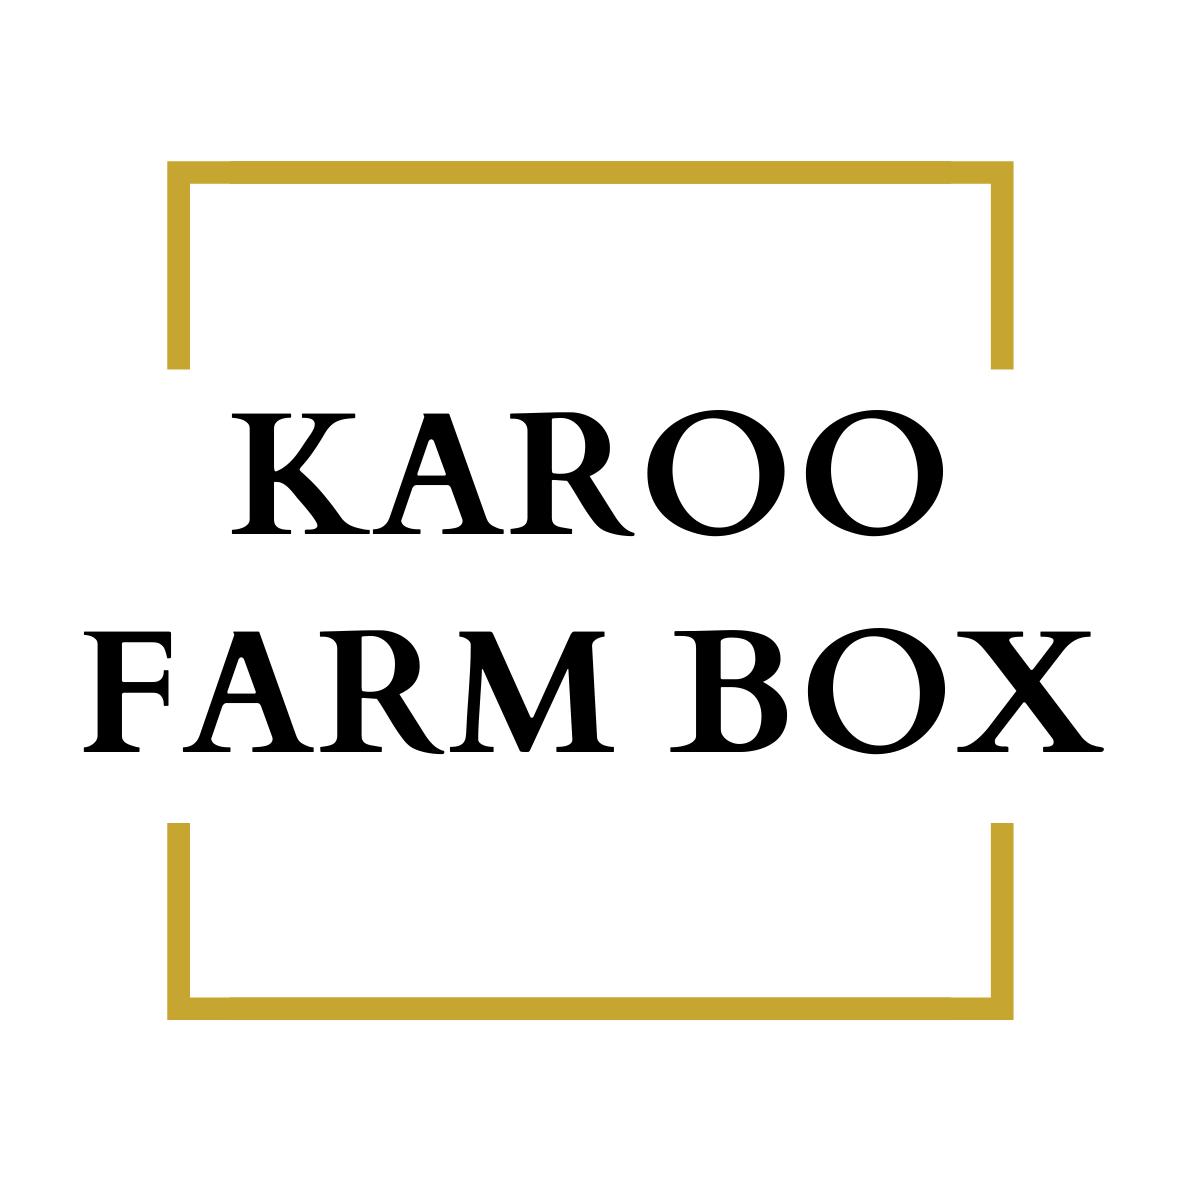 Karoo Farm Box